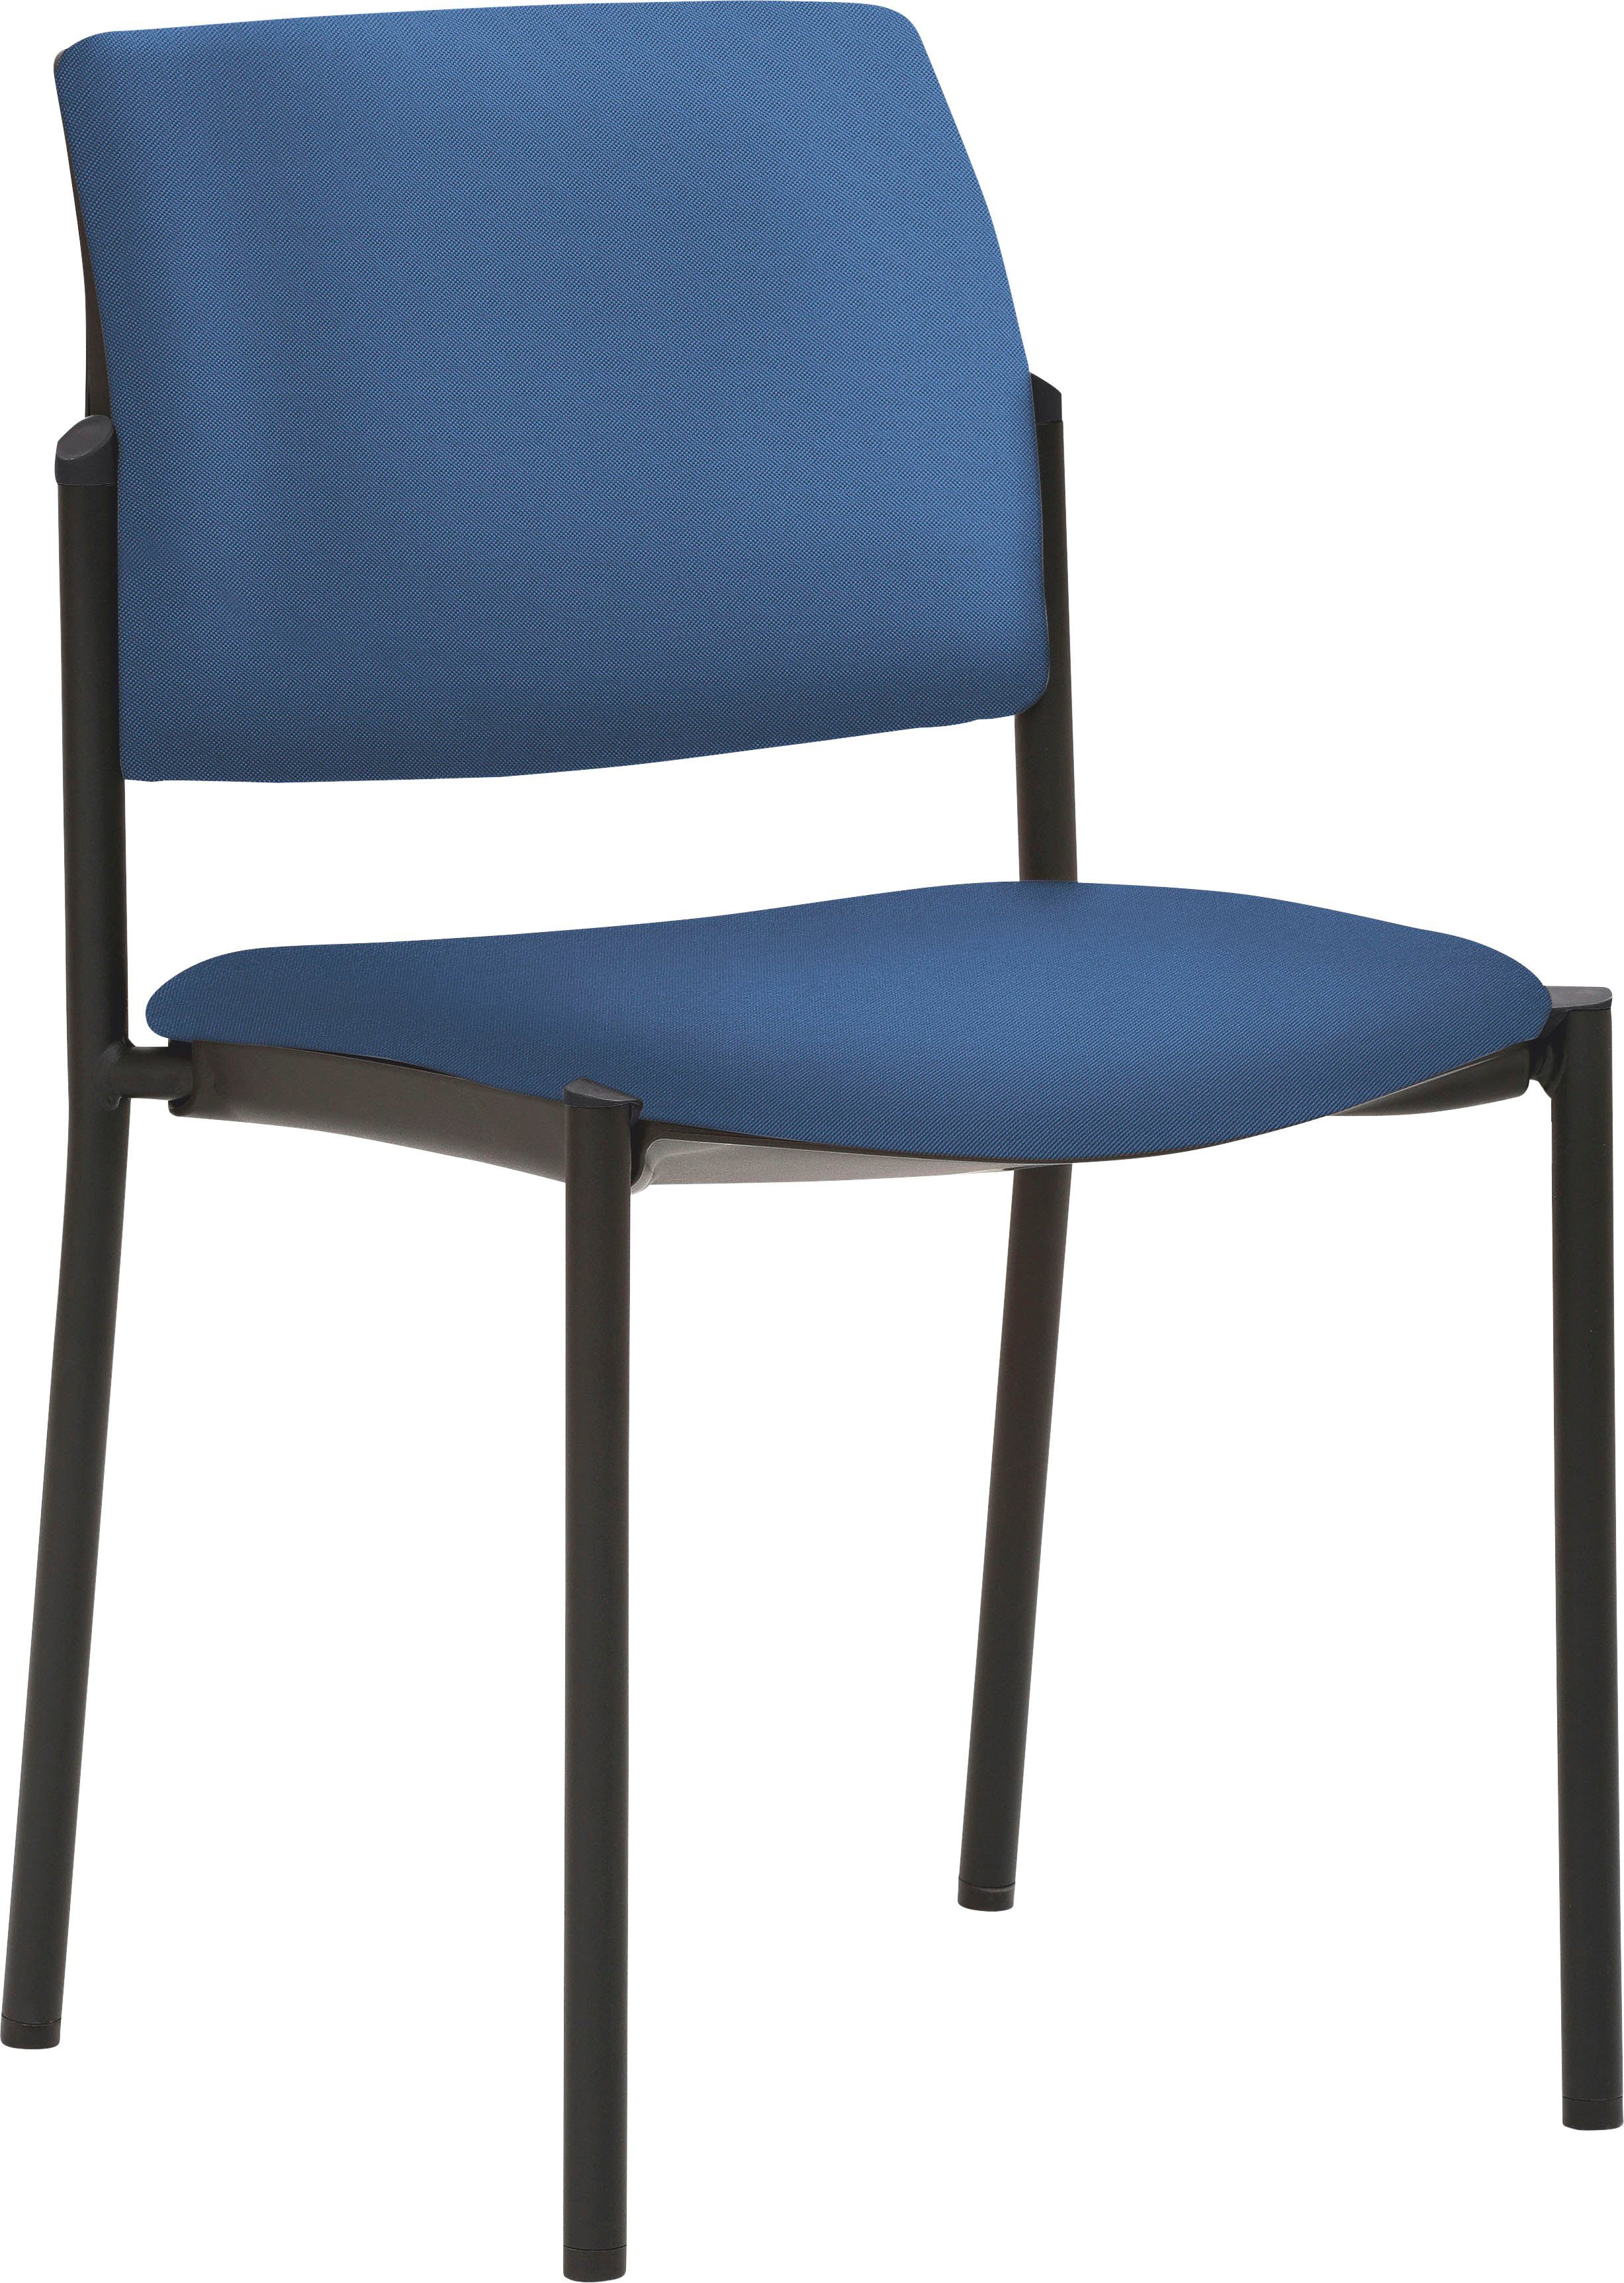 Mayer Sitzmöbel Besucherstuhl 2518, stapelbar bis 6 Stück Blau | Blau